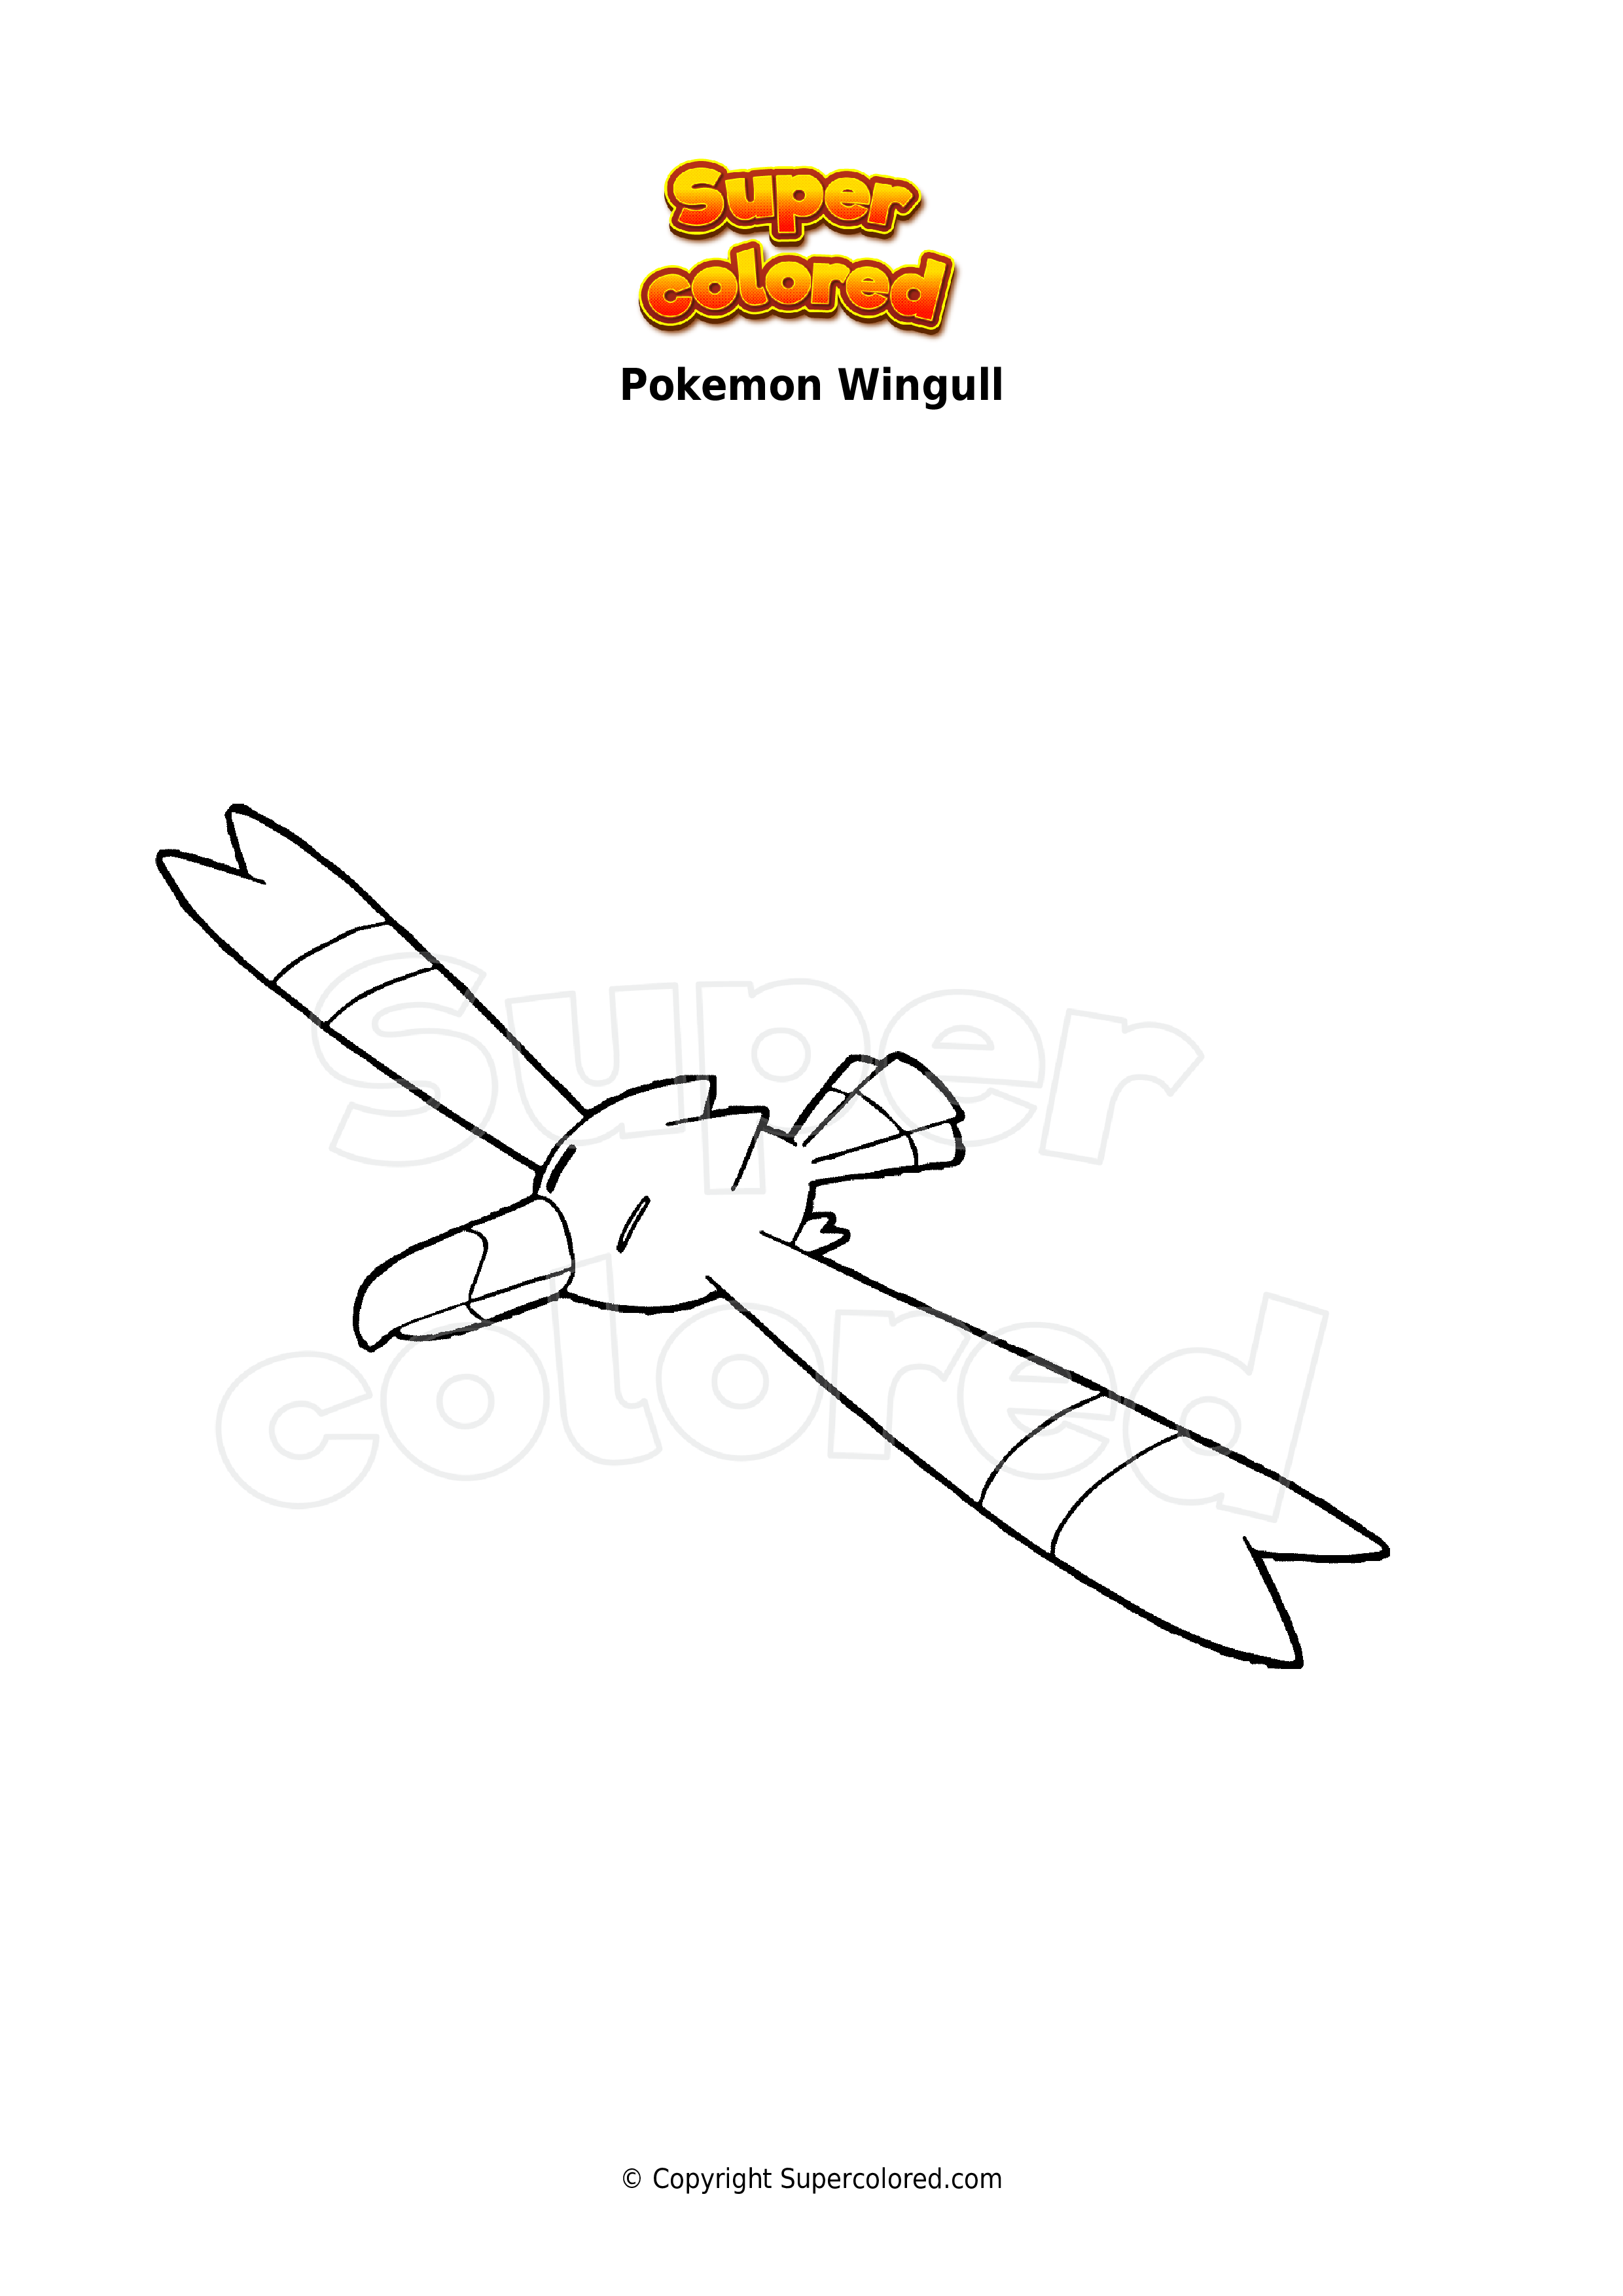 Coloring Page Pokemon Wingull Supercolored Com